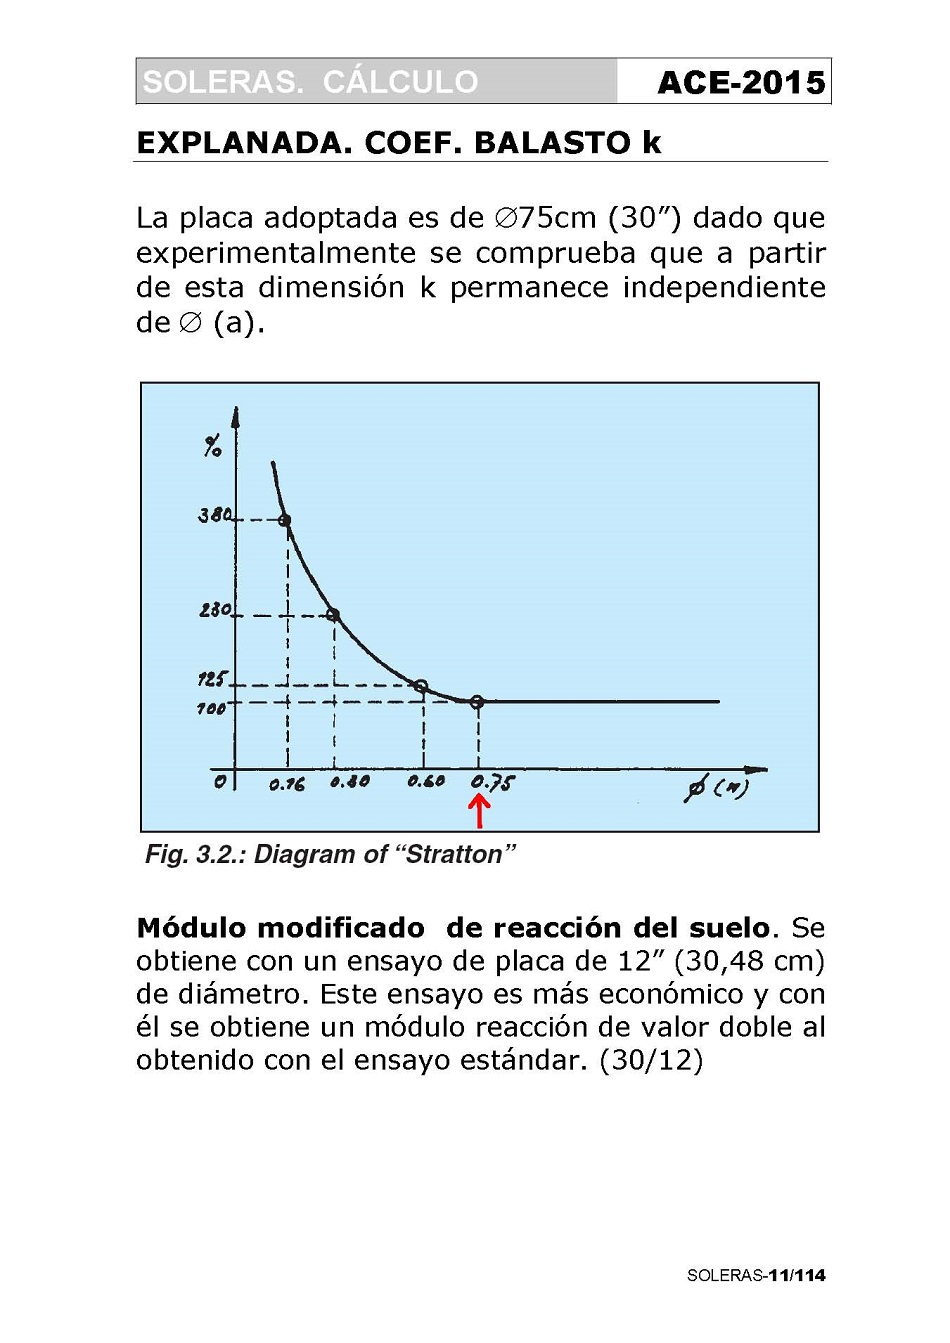 Cálculo de Soleras de Hormigón. Página 11